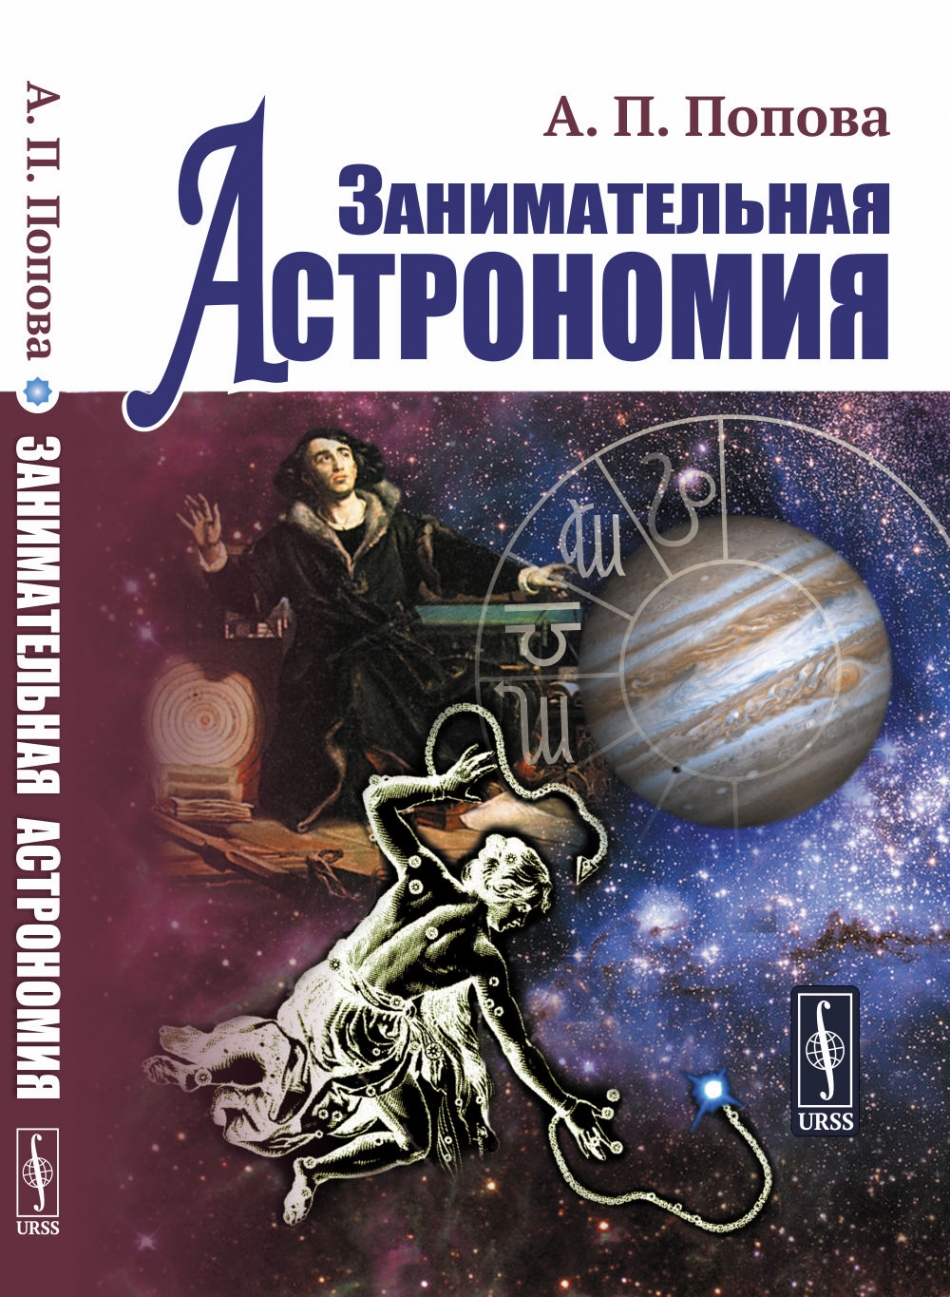 Попова А.П. Занимательная астрономия 